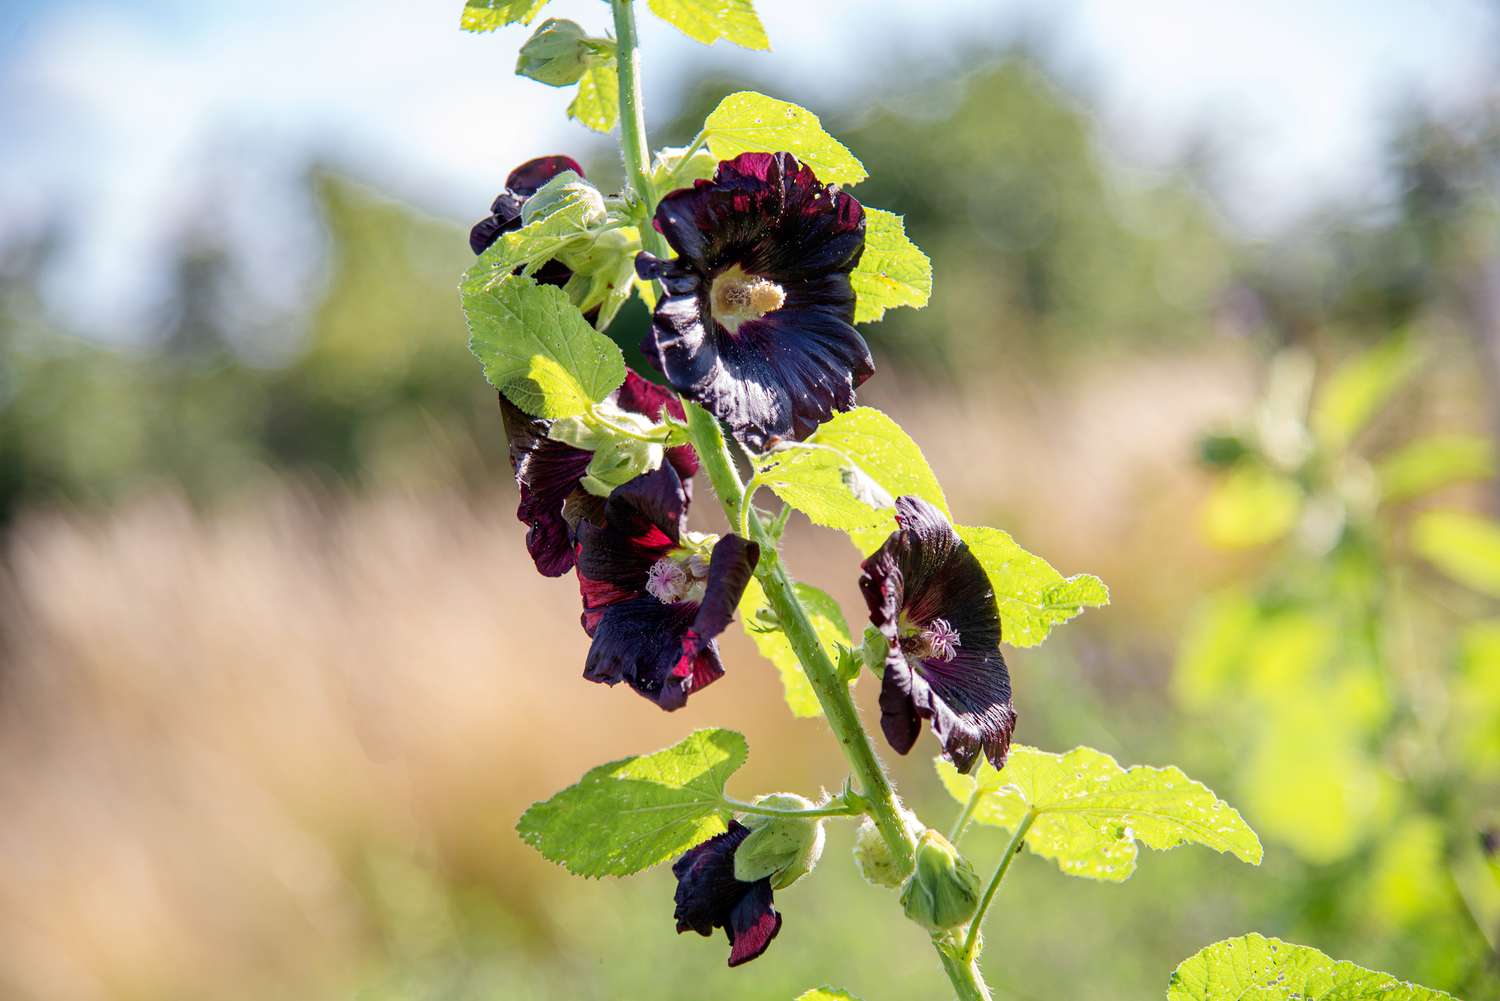 Schwarzer Ilex-Pflanzenstamm mit tiefviolett-schwarzen gefüllten Blüten und großen Blättern im Sonnenlicht in Nahaufnahme